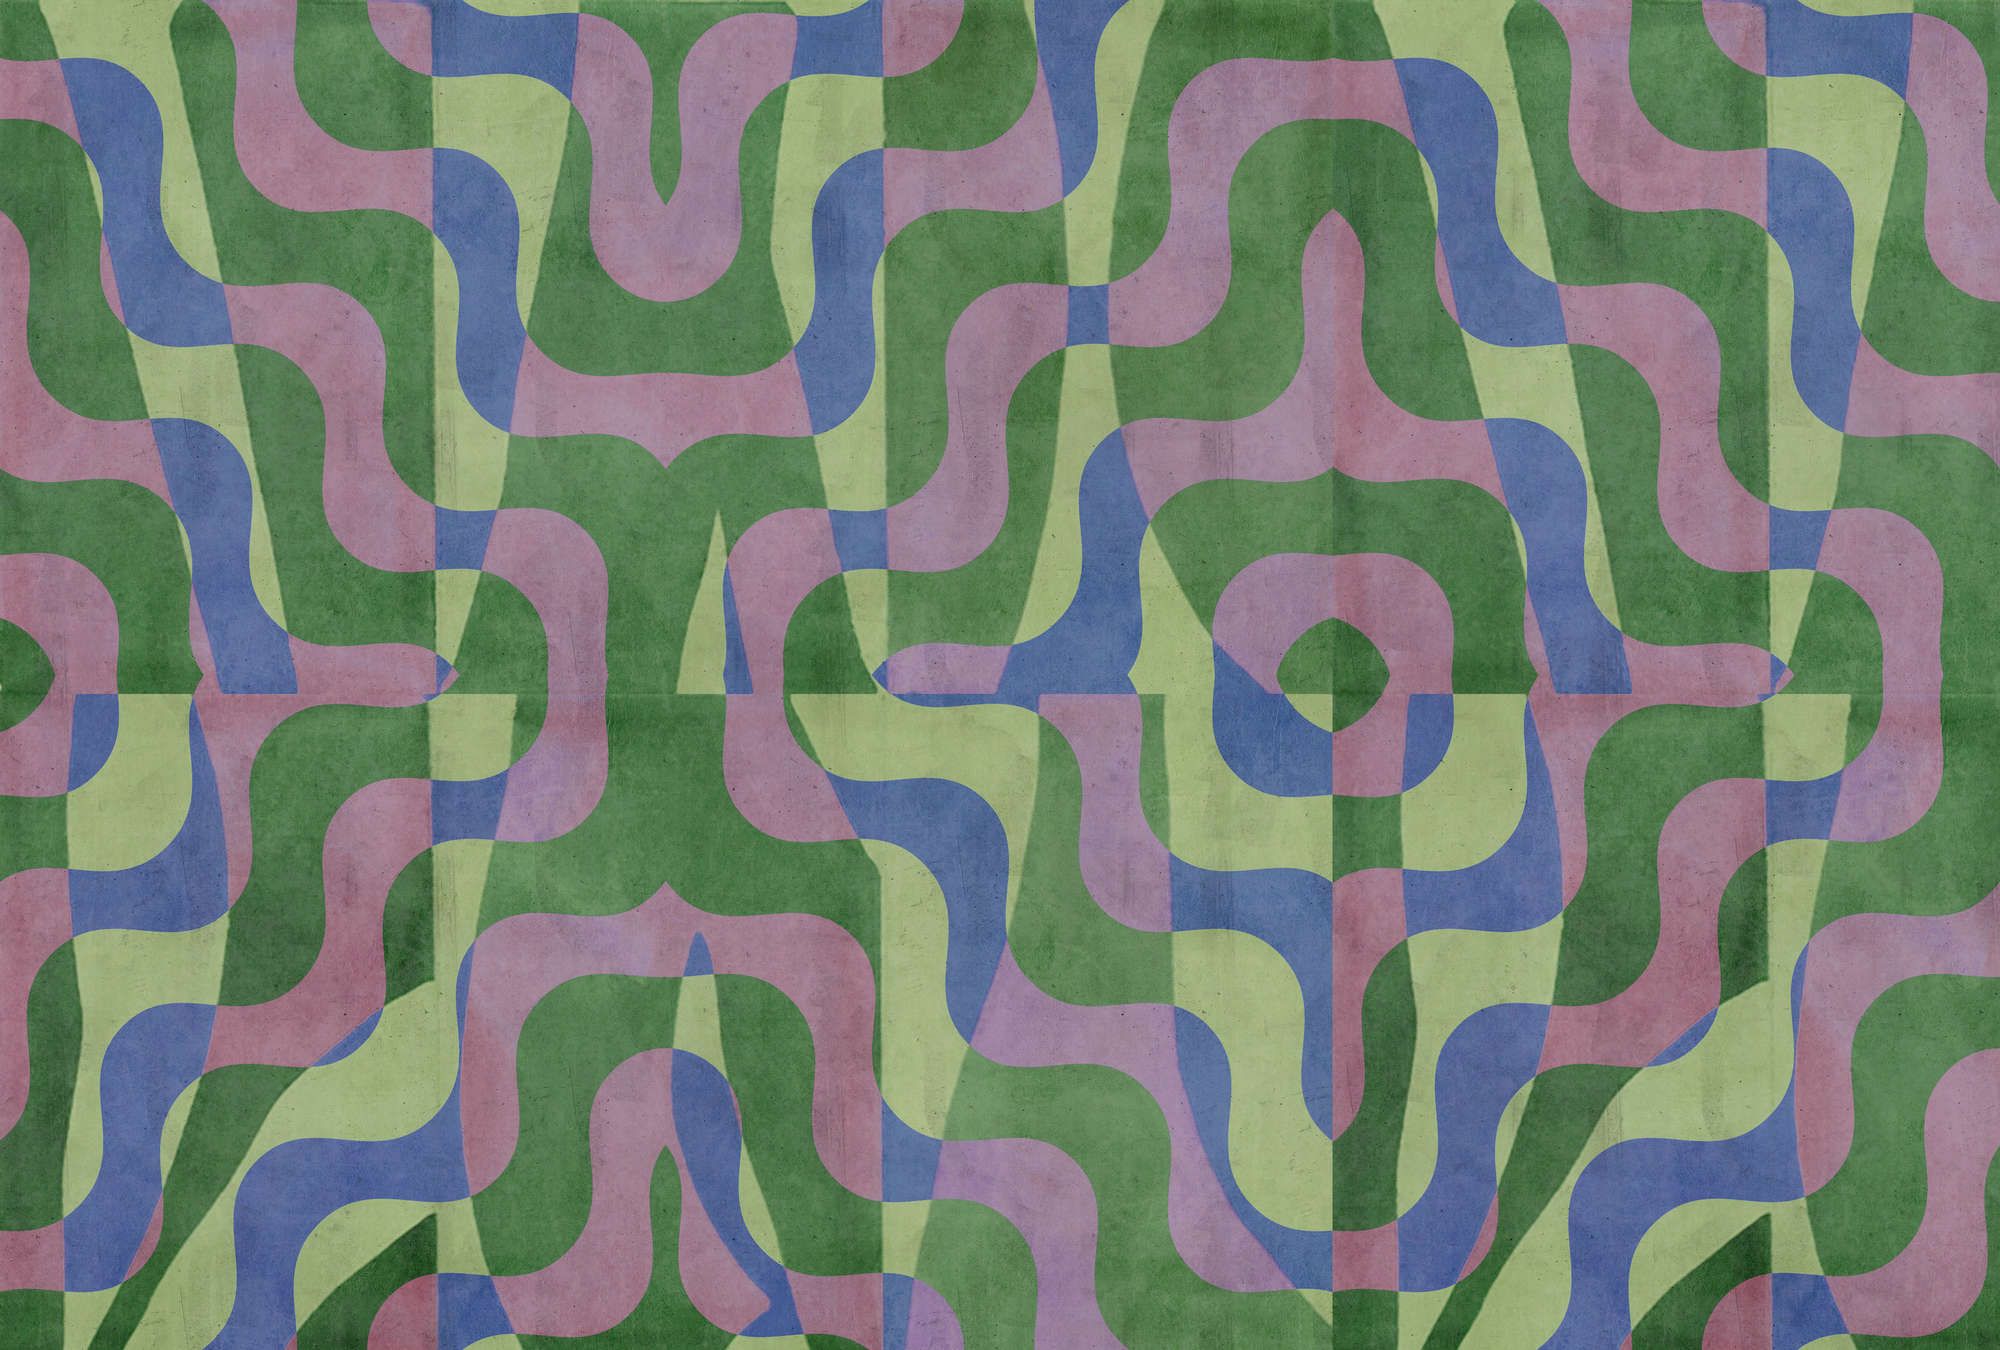             Fotomural »viola« - Motivo abstracto retro delante de un enlucido de hormigón - Verde, azul, violeta | Material sin tejer ligeramente texturado
        